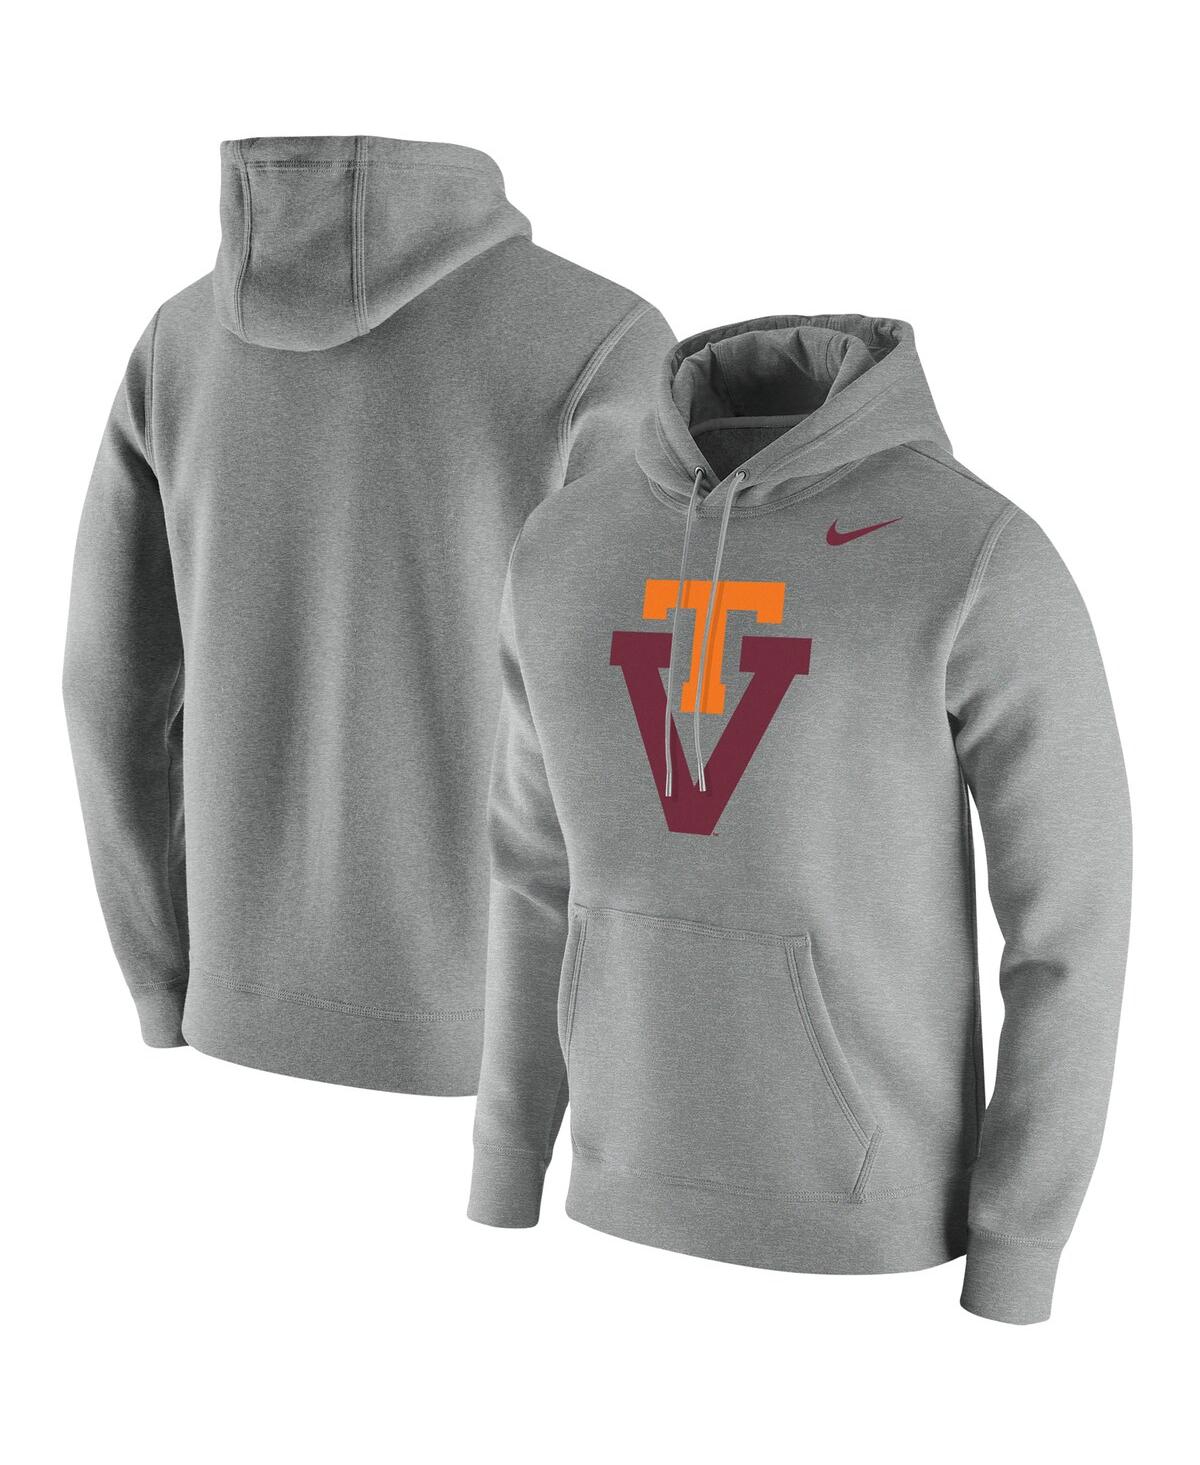 Shop Nike Men's  Heathered Gray Virginia Tech Hokies Vintage-like School Logo Pullover Hoodie